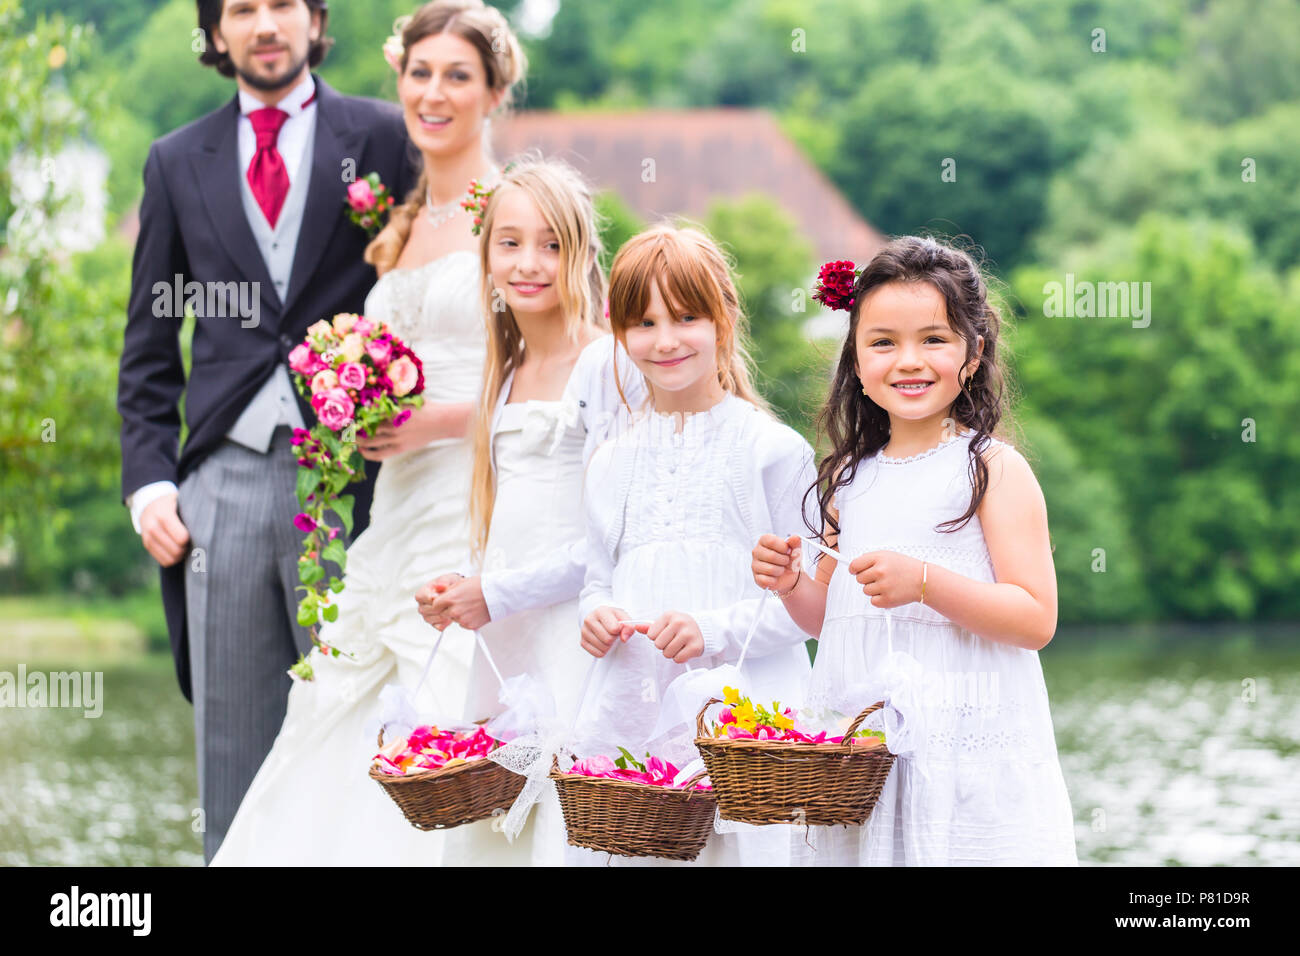 Wedding bridesmaids children with flower basket Stock Photo